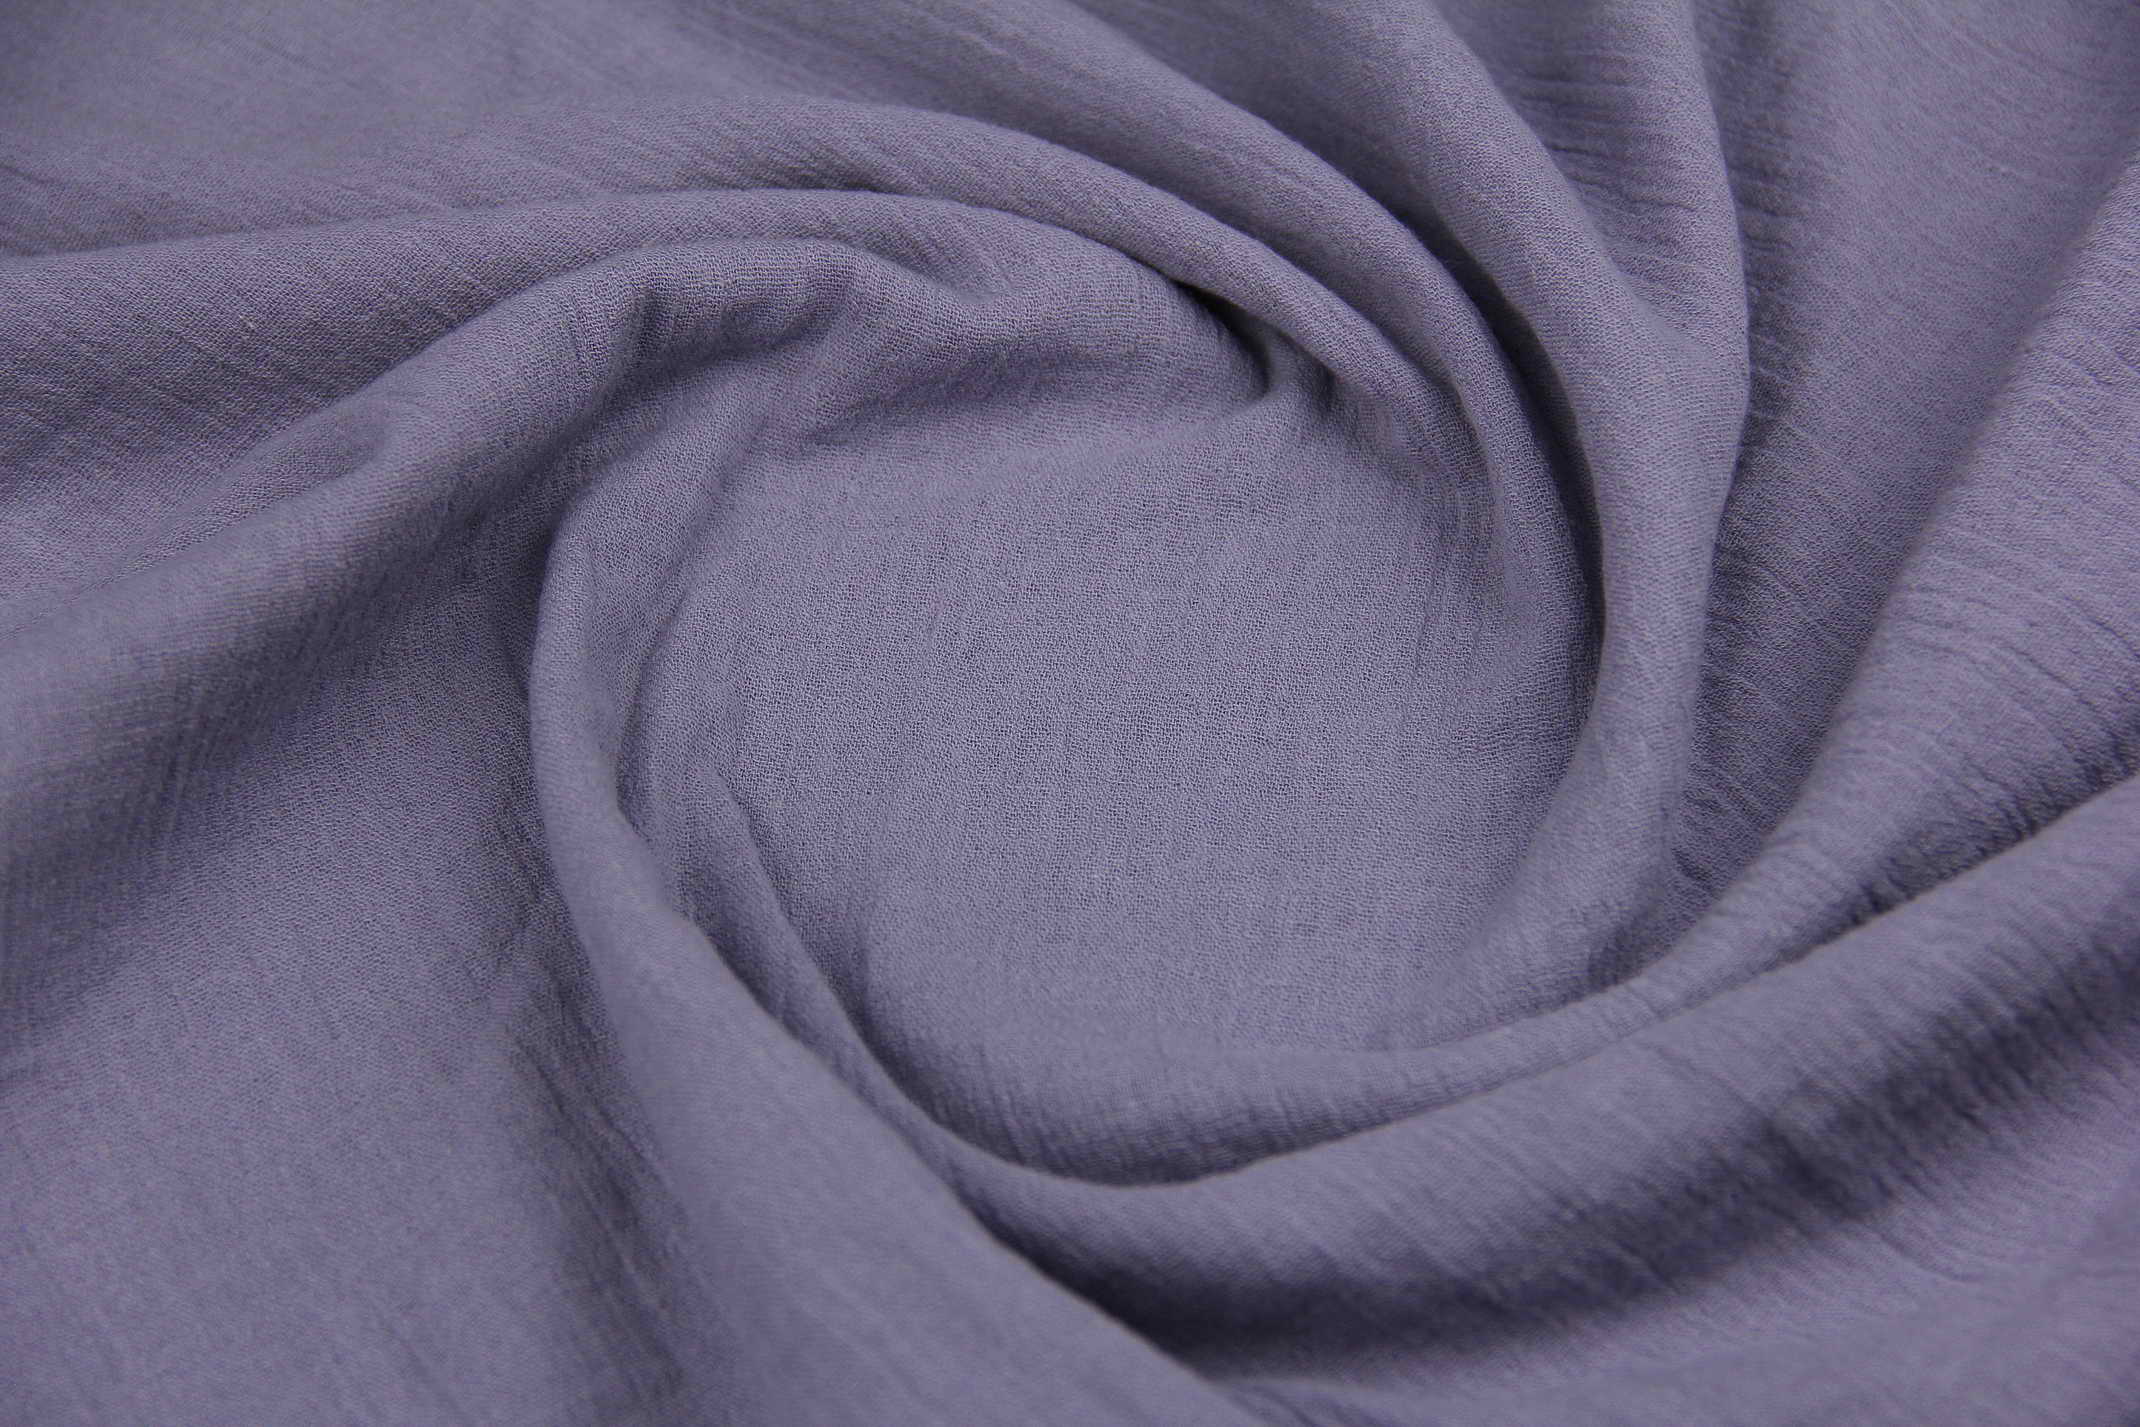 Ткань Муслин жатый двухслойный Серо-синий, Турция, плотность 160 г/м2